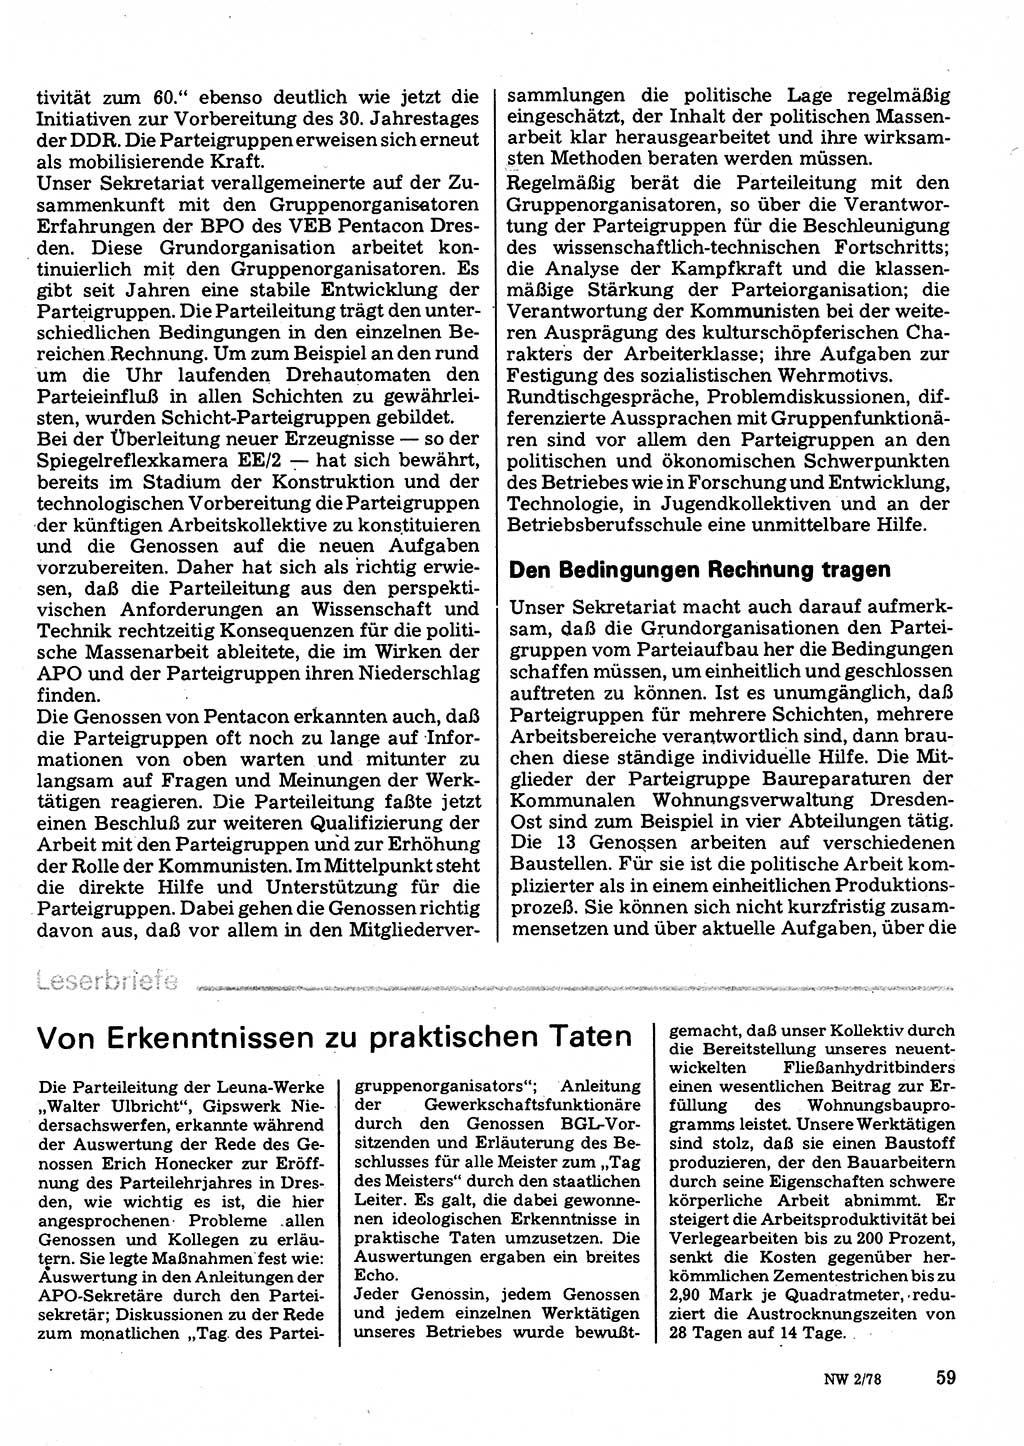 Neuer Weg (NW), Organ des Zentralkomitees (ZK) der SED (Sozialistische Einheitspartei Deutschlands) für Fragen des Parteilebens, 33. Jahrgang [Deutsche Demokratische Republik (DDR)] 1978, Seite 59 (NW ZK SED DDR 1978, S. 59)